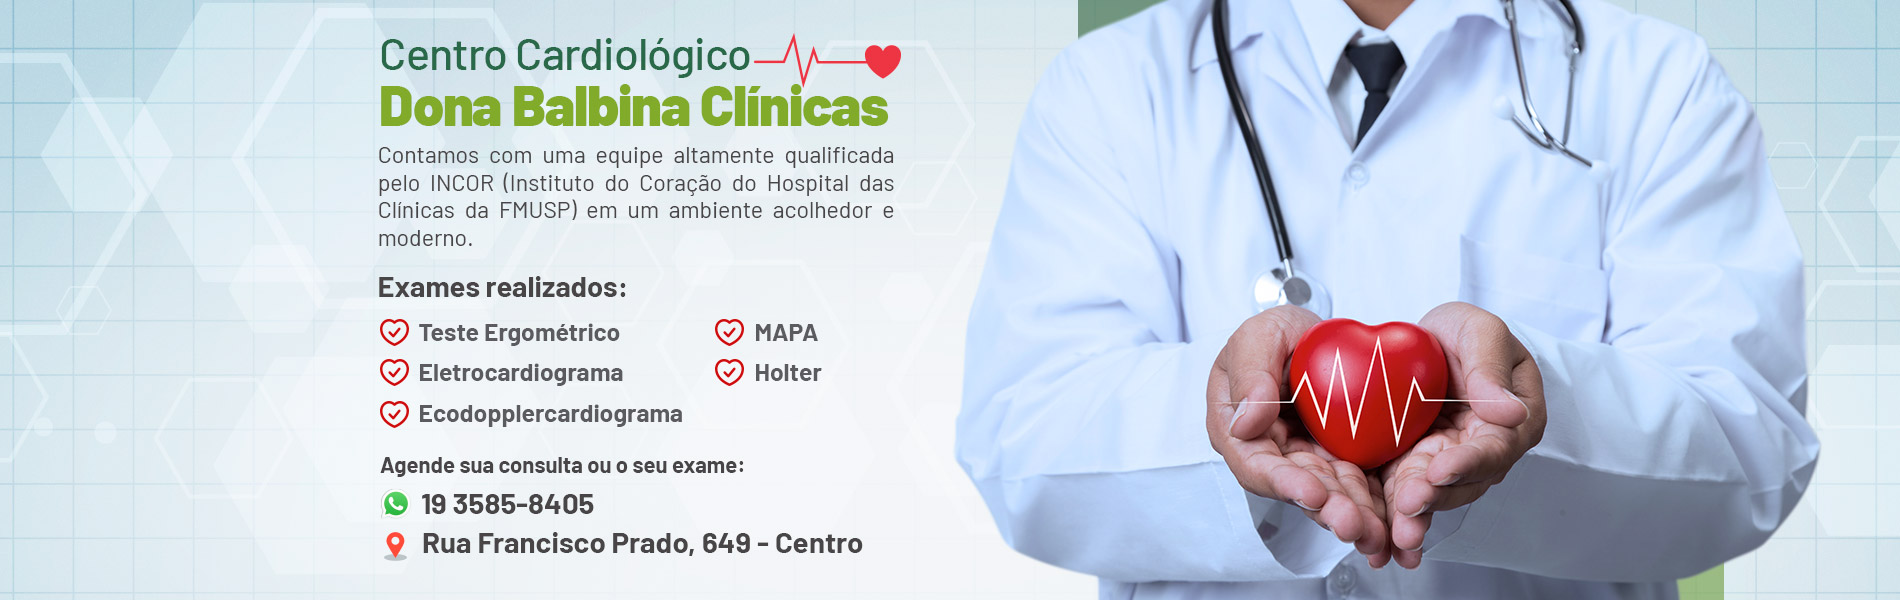 Banner Dona Balbina Clínicas Centro Cardiológico